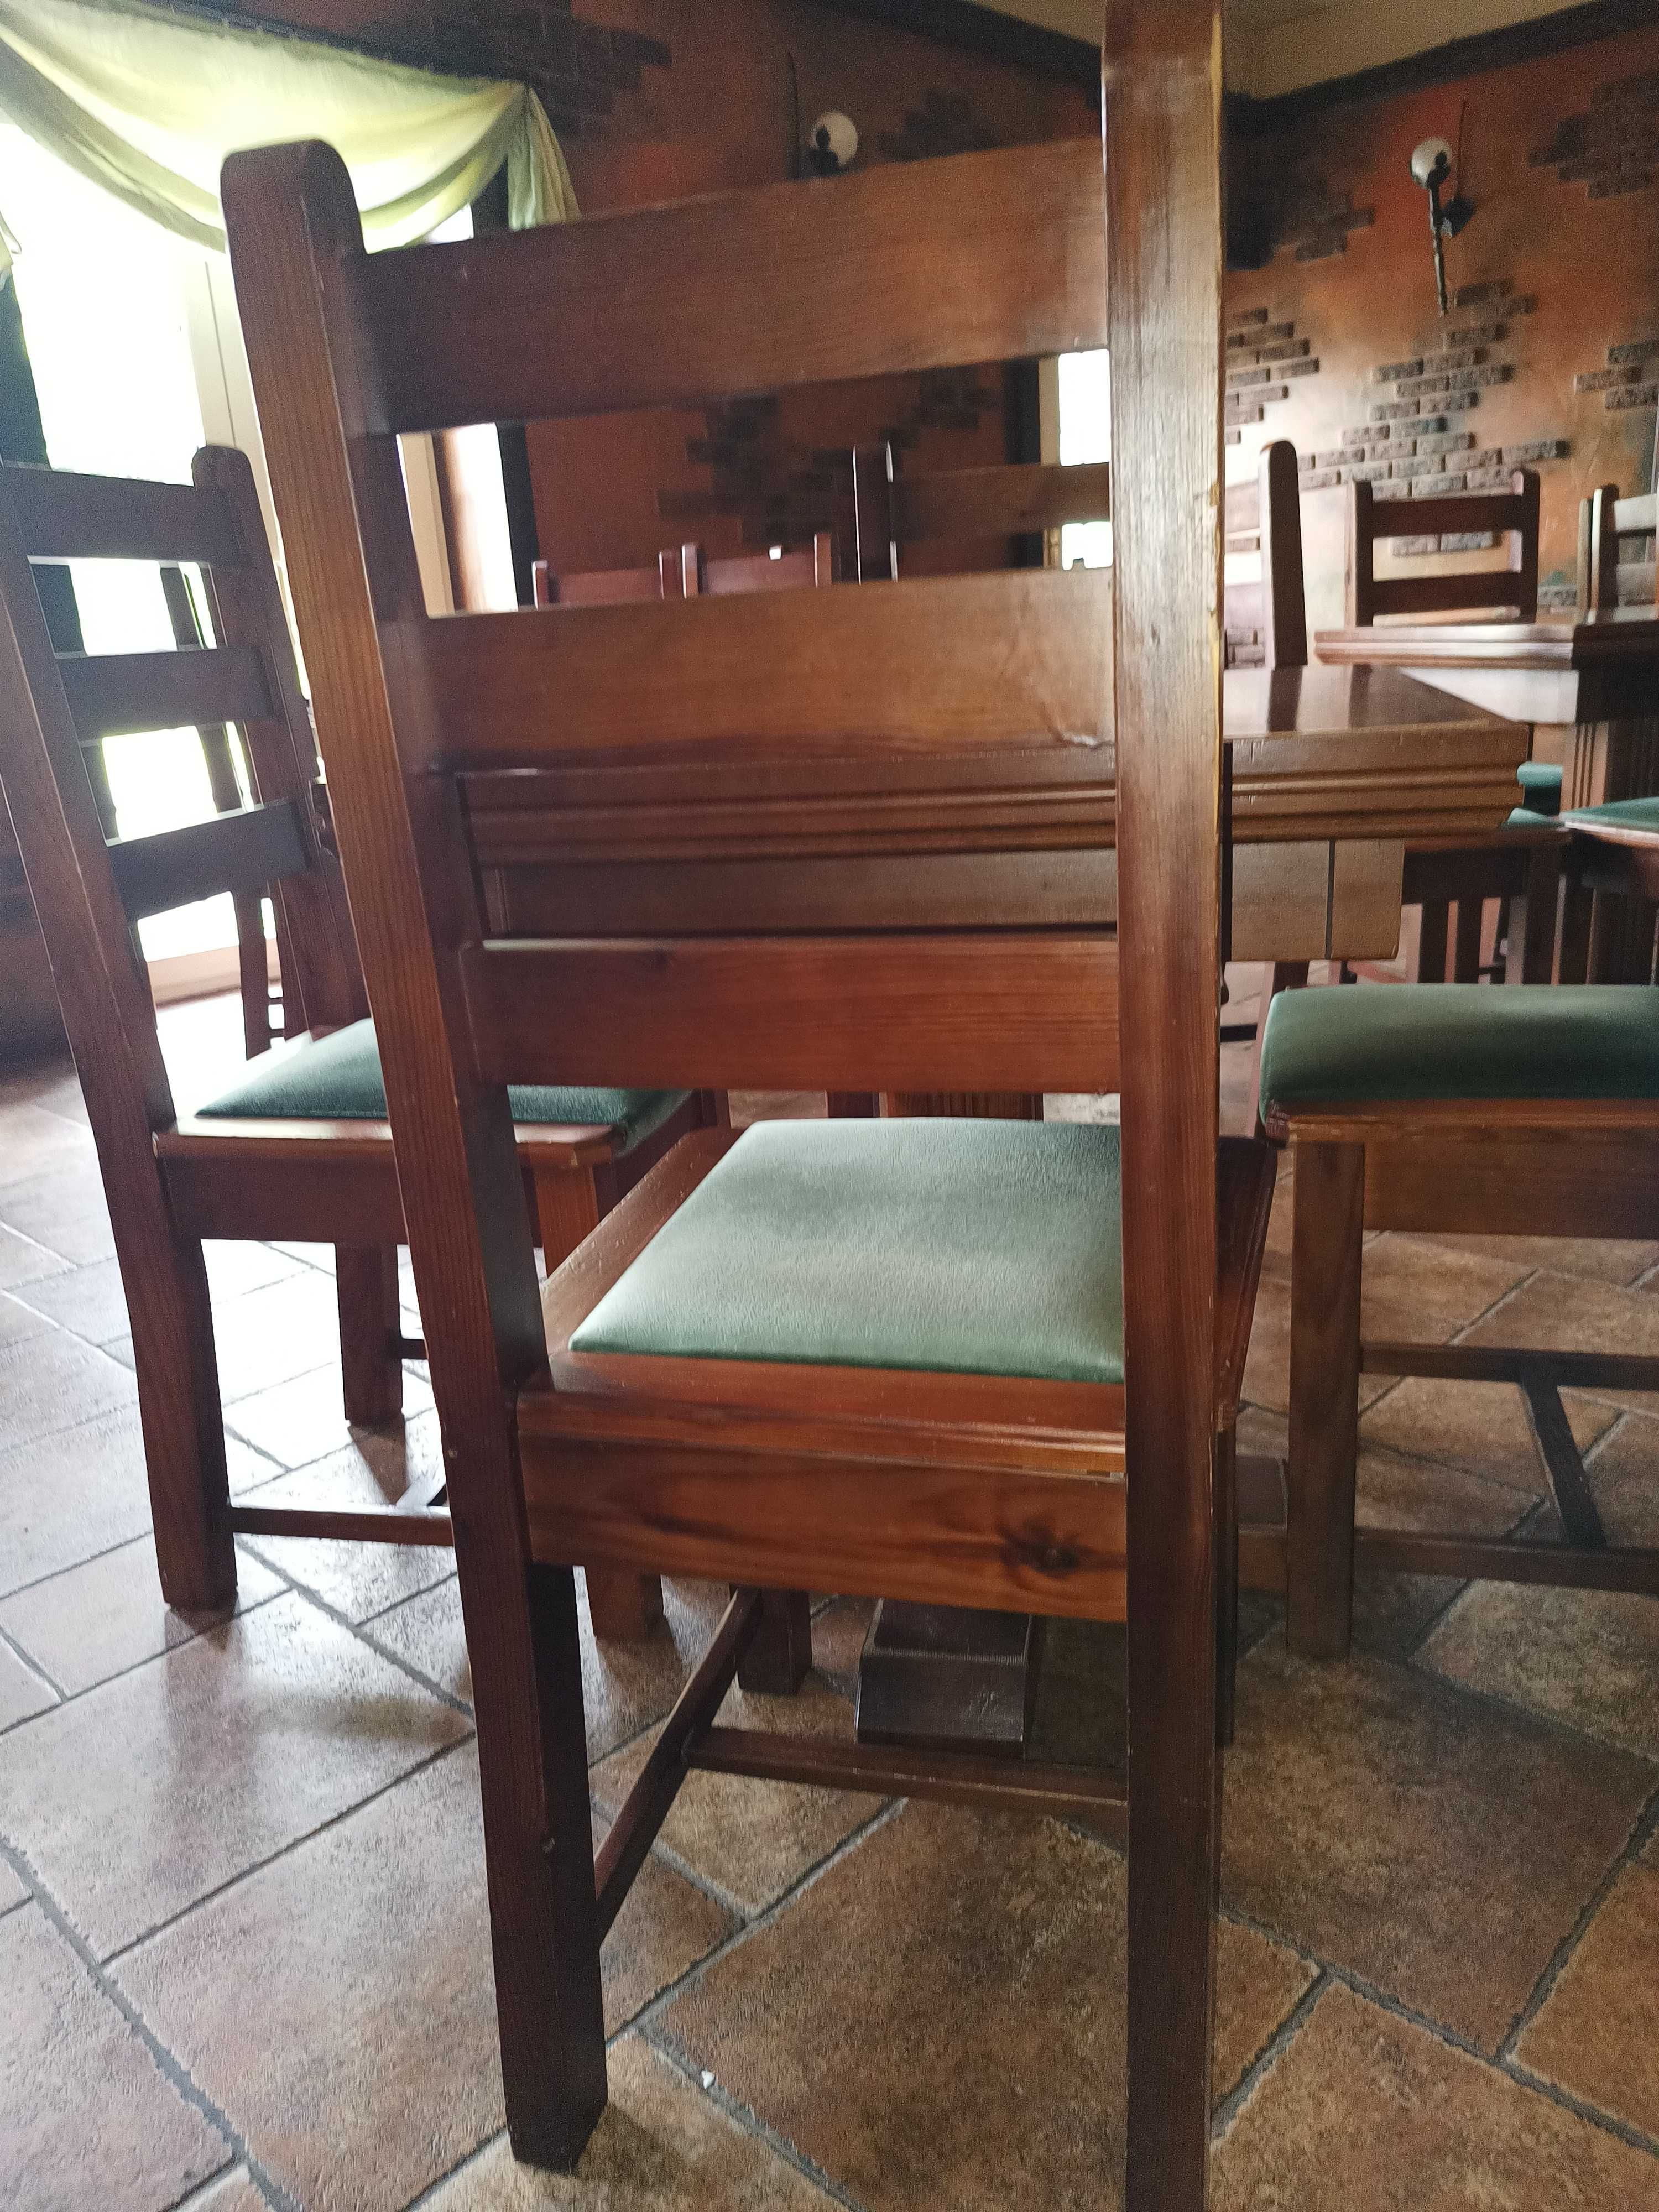 Stoly dwa rozne wymiary i krzesla